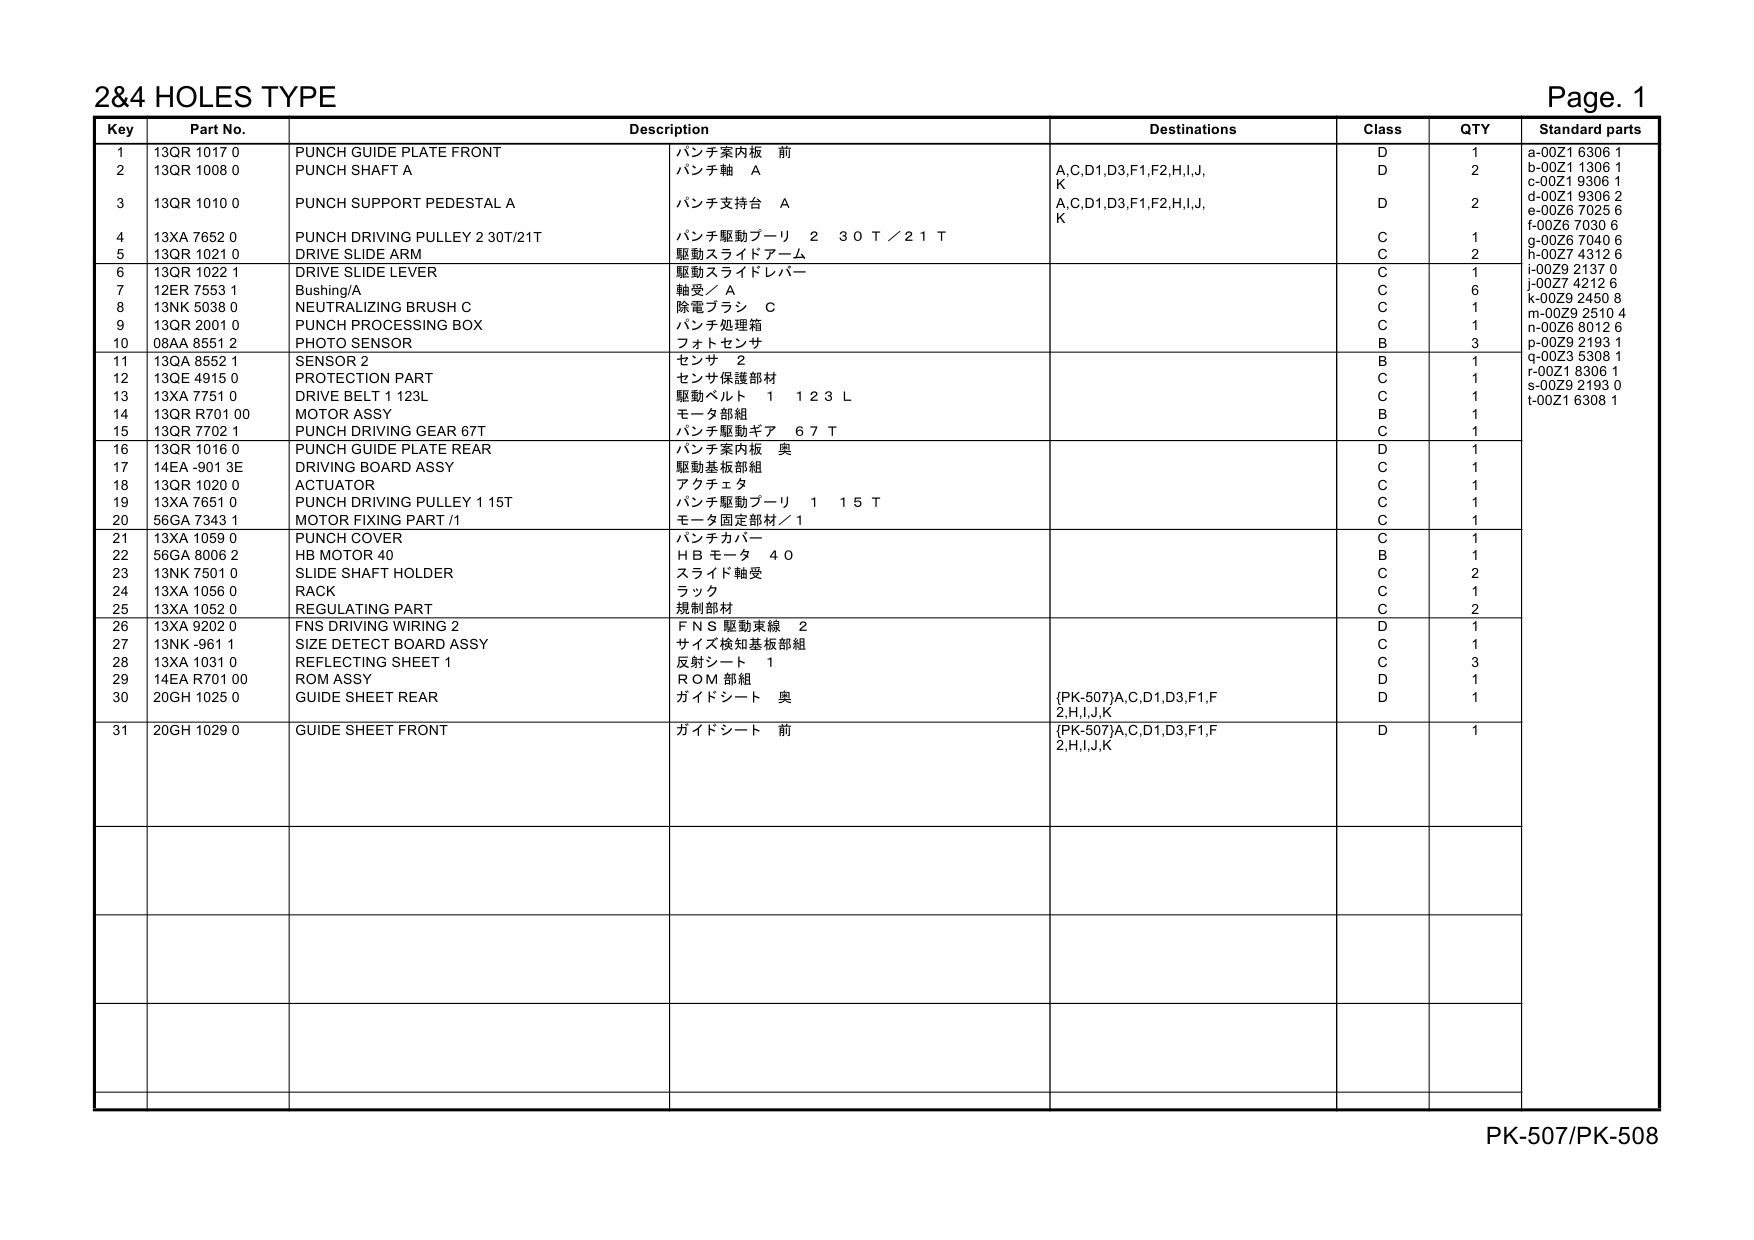 Konica-Minolta Options PK-507 508 20GH Parts Manual-4